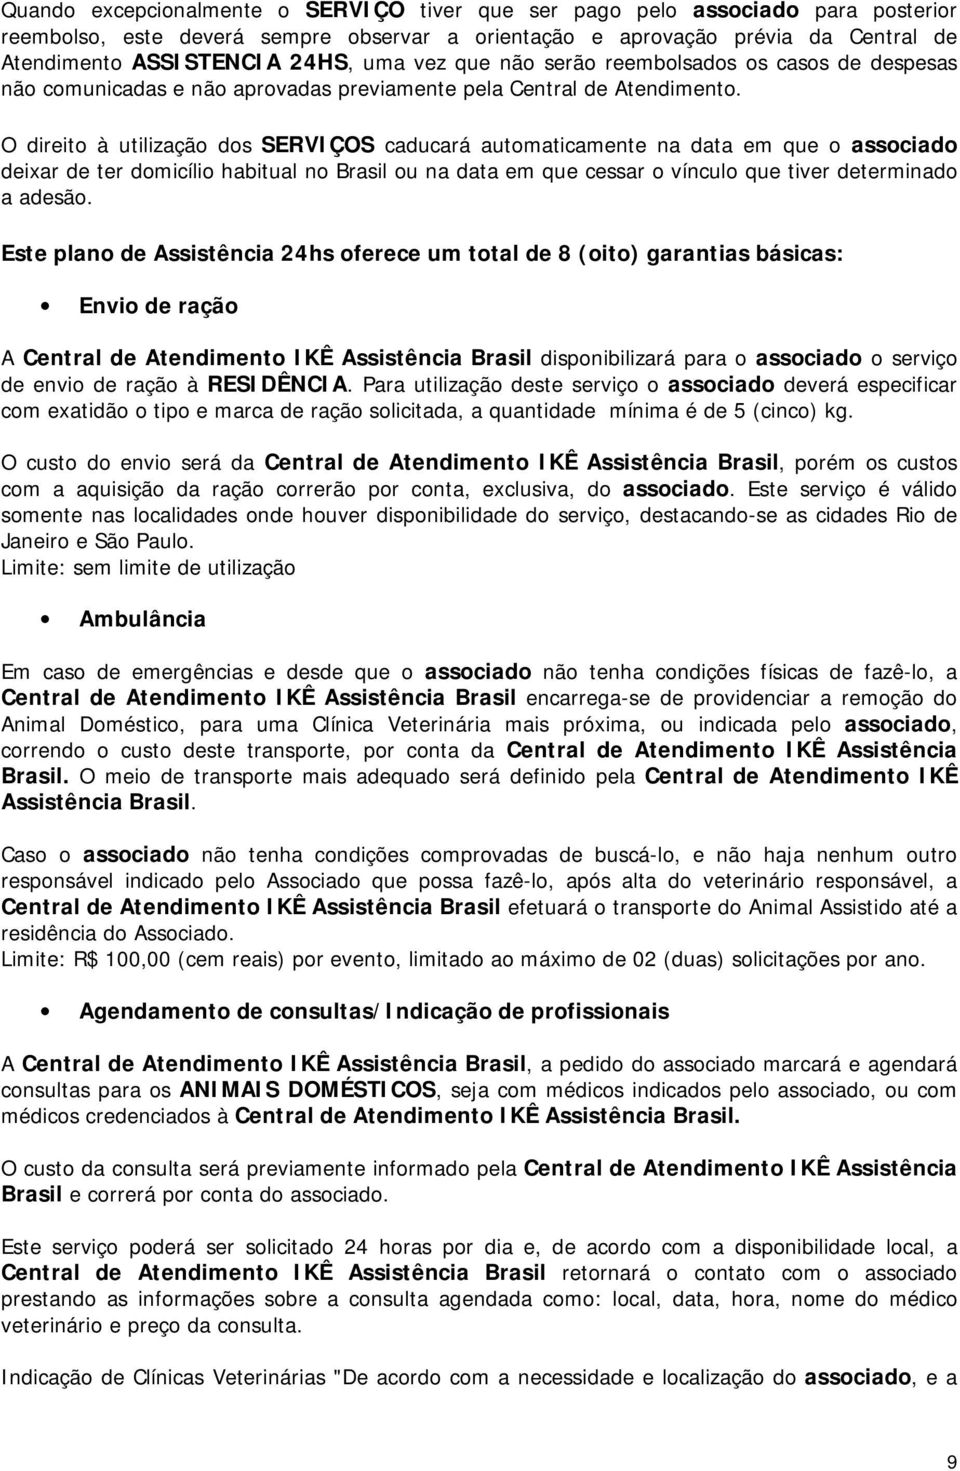 O direito à utilização dos SERVIÇOS caducará automaticamente na data em que o associado deixar de ter domicílio habitual no Brasil ou na data em que cessar o vínculo que tiver determinado a adesão.